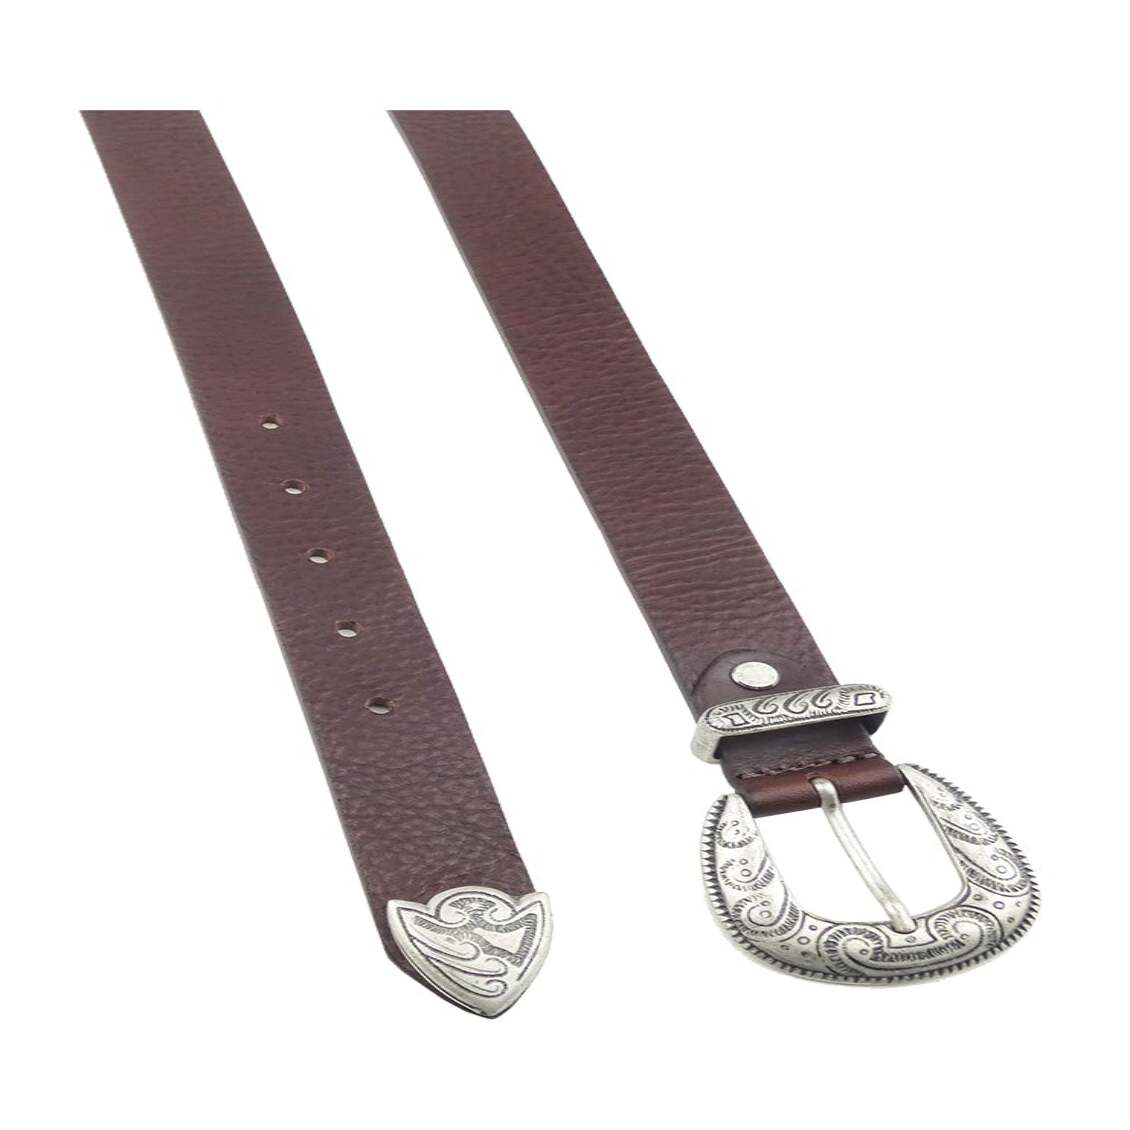 3 cm breiter Ledergürtel mit silberner Zamak-Schnalle und Schlaufe – Picasso